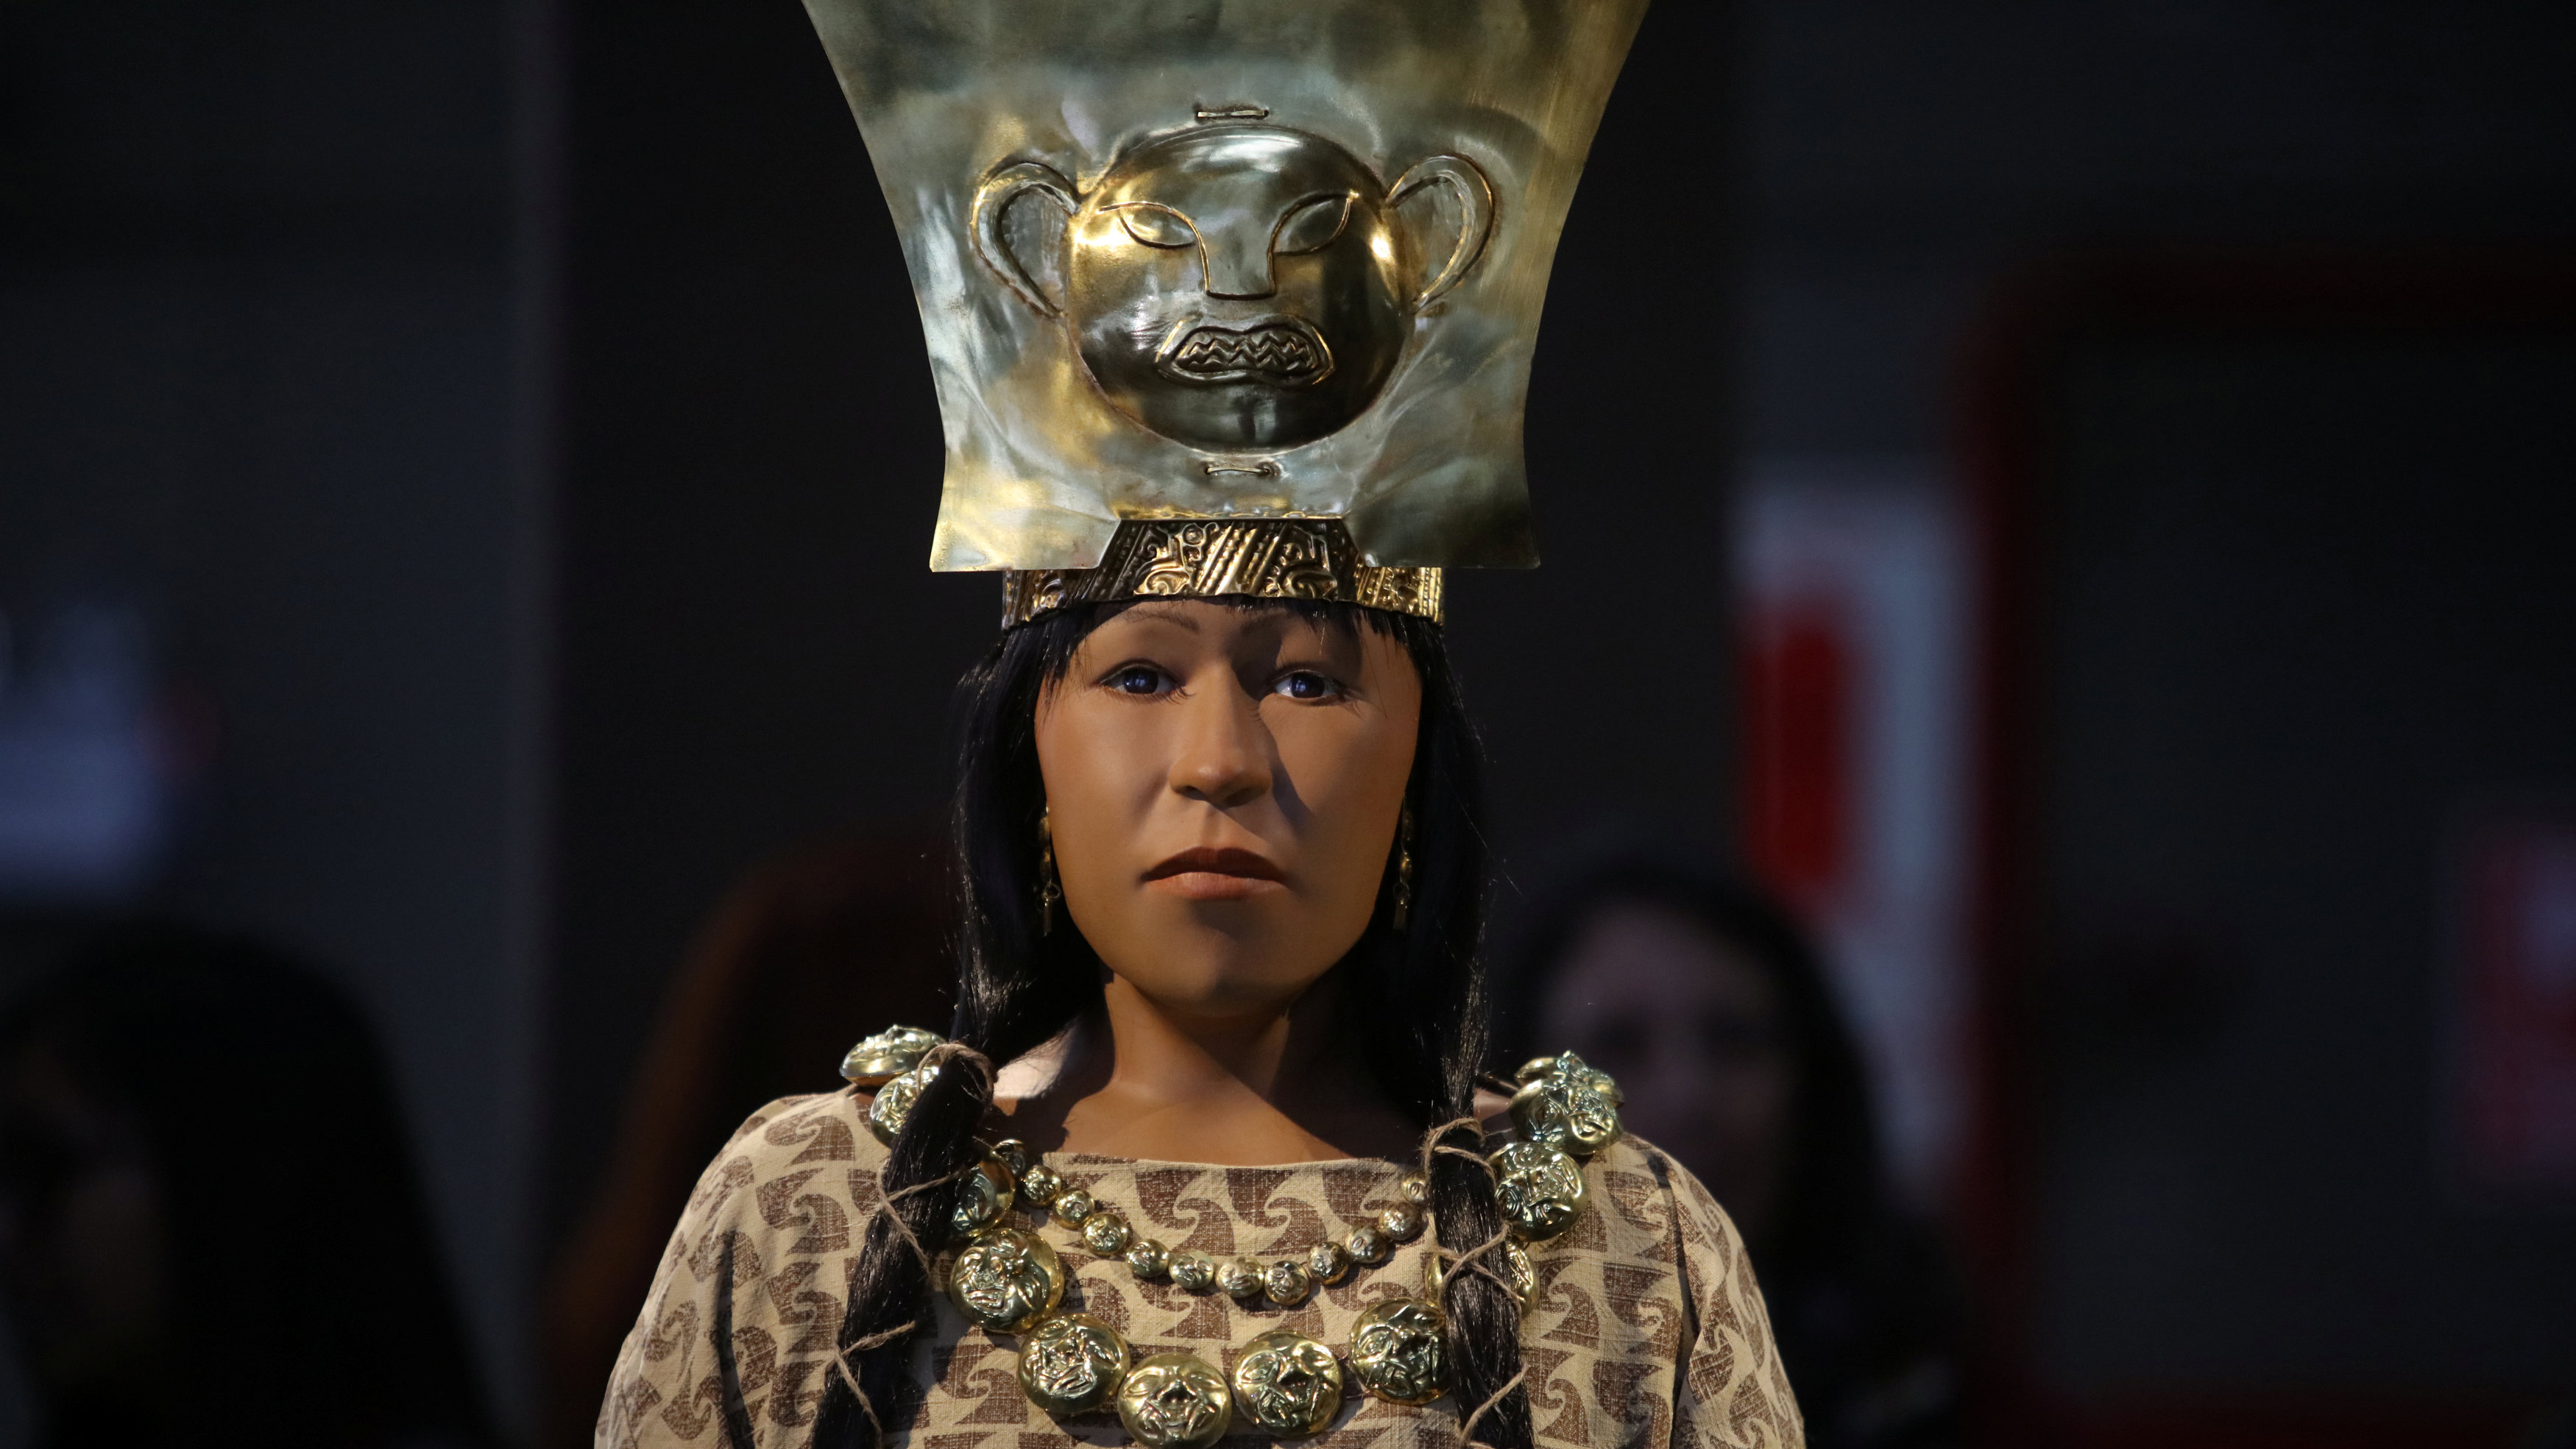 Científicos reconstruyen el rostro de una antigua líder peruana